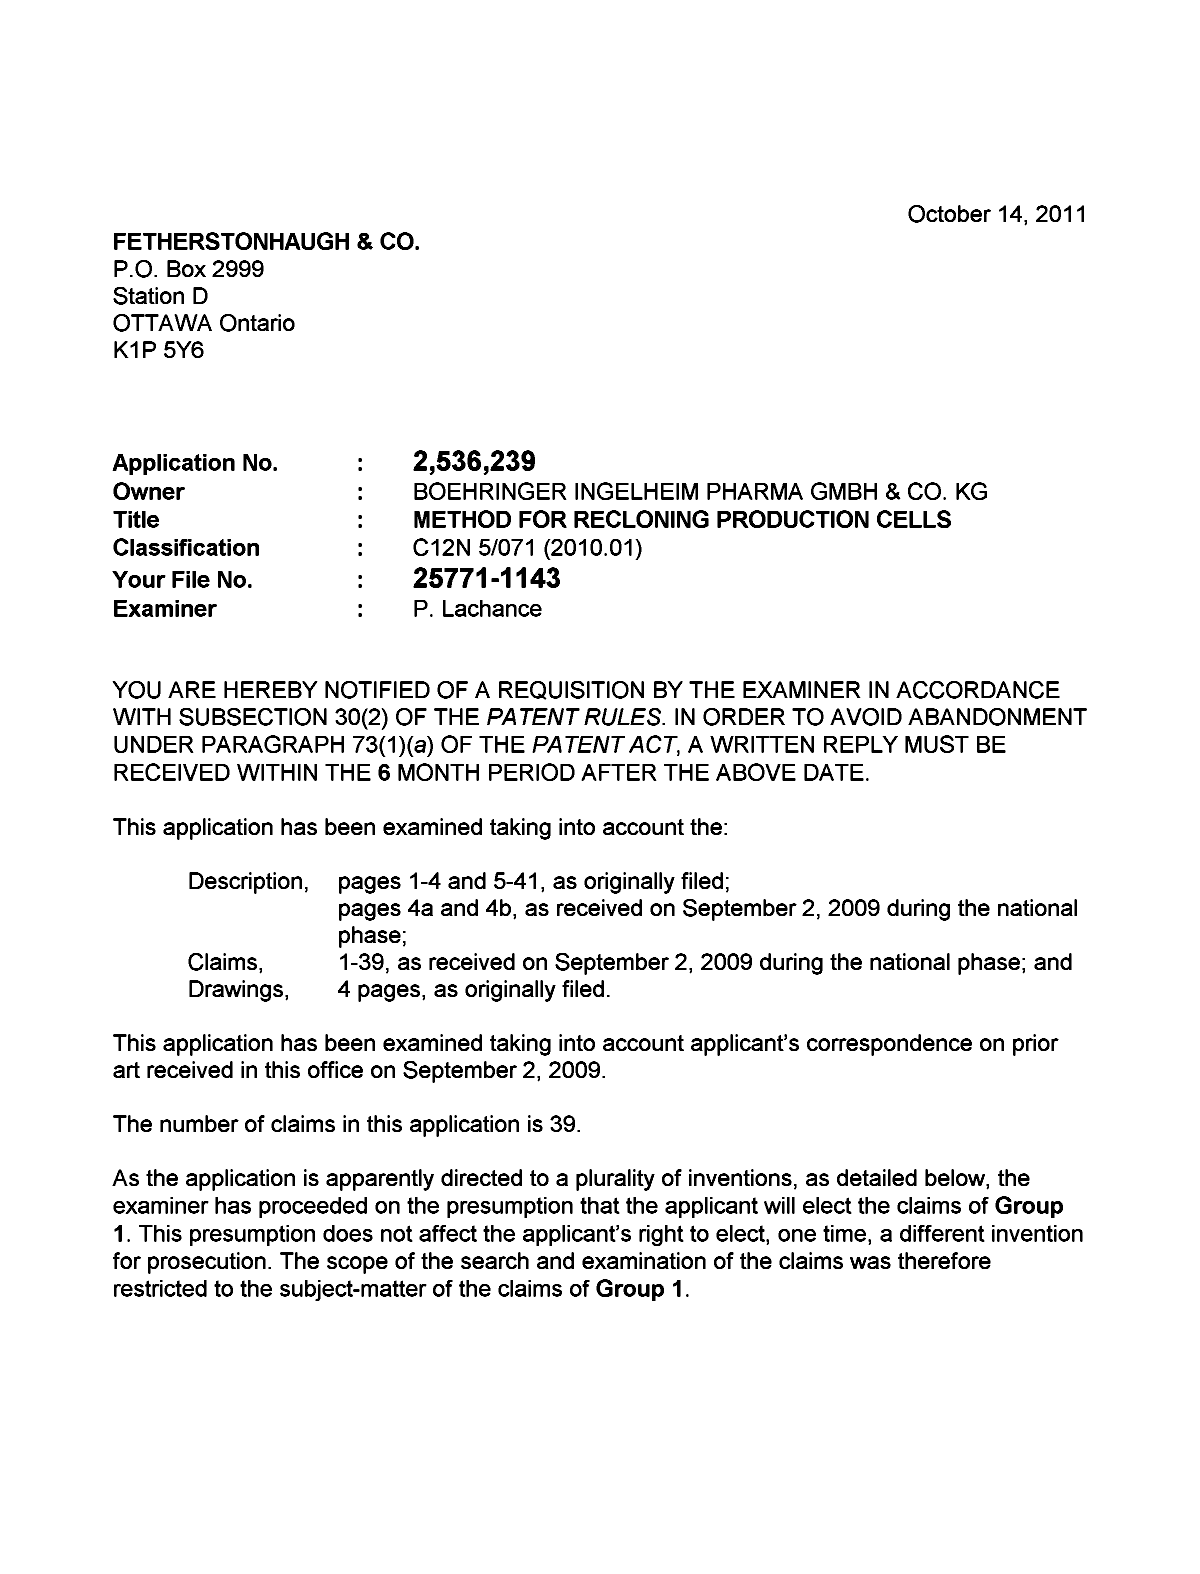 Document de brevet canadien 2536239. Poursuite-Amendment 20111014. Image 1 de 5